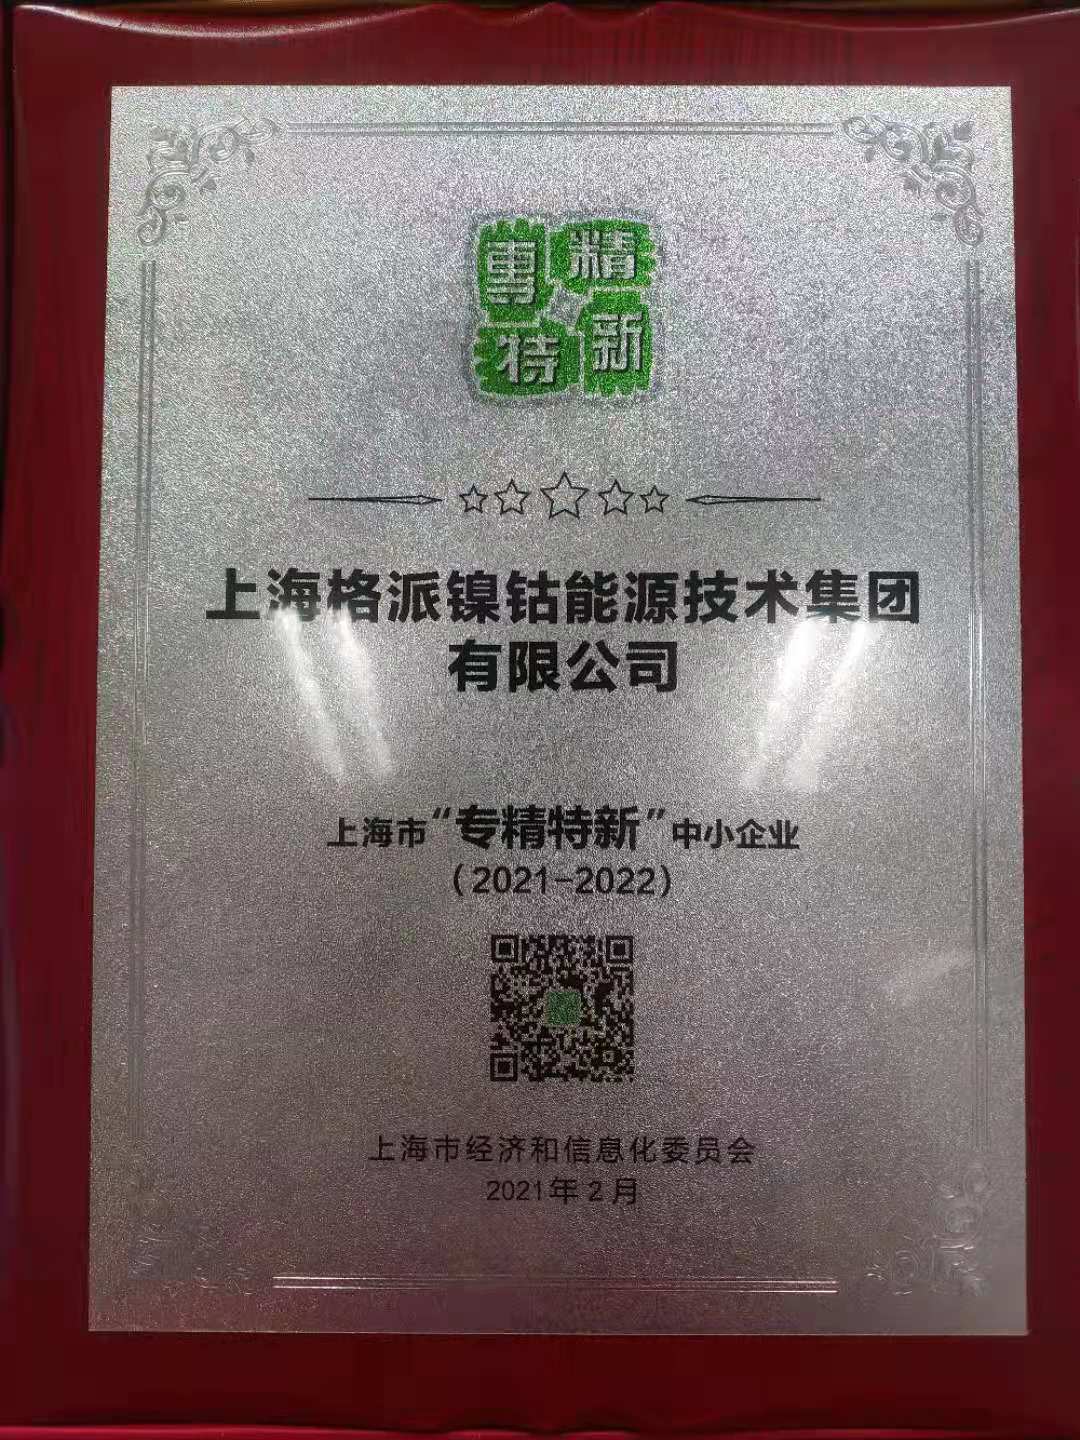 格派集团荣获上海市“专精特新”企业荣誉称号